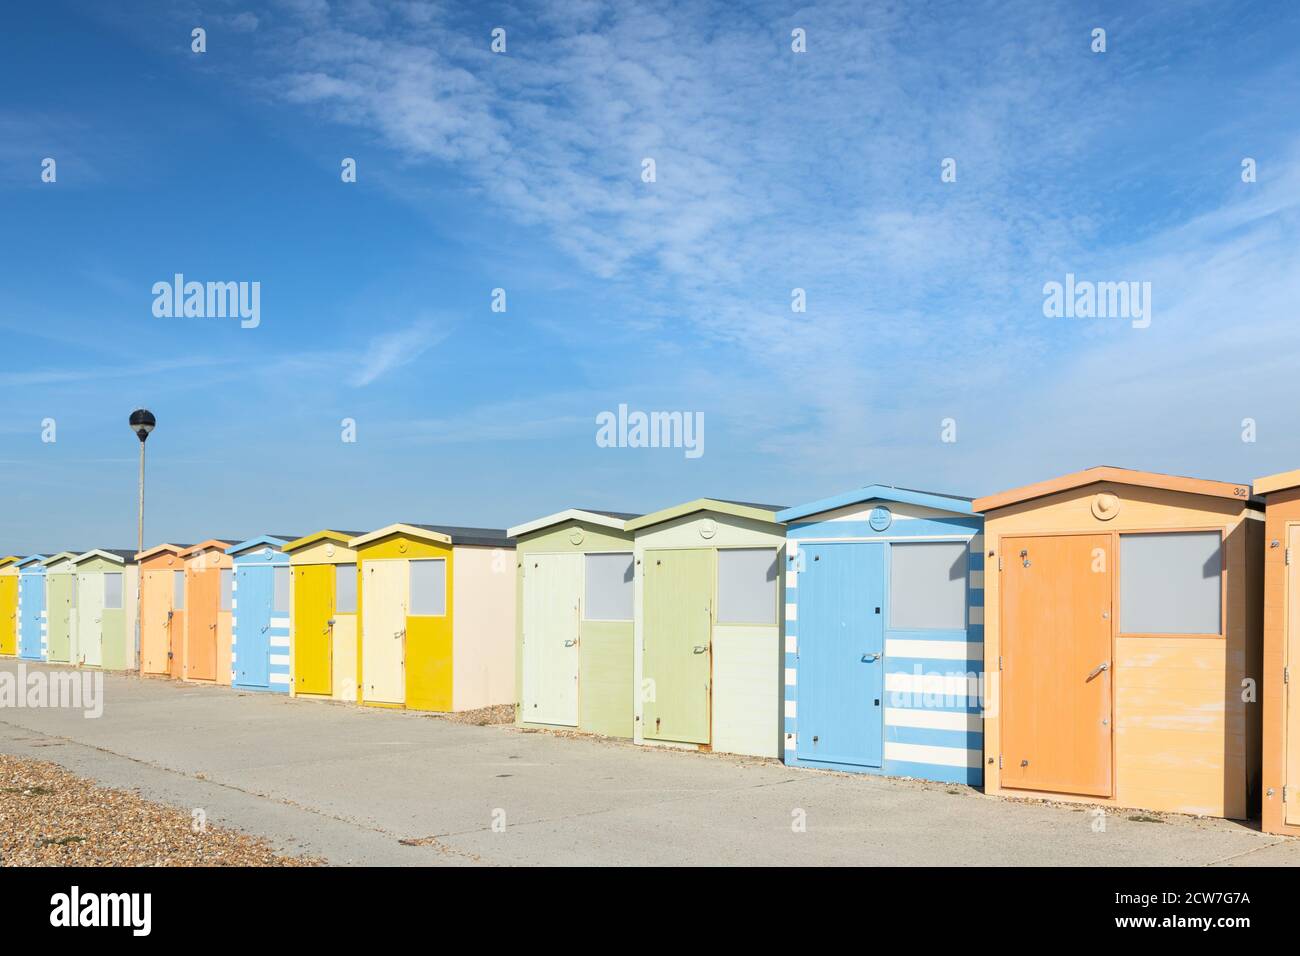 Des cabanes de plage colorées sur la plage de Seaford. Seaford, East Sussex, Angleterre, Royaume-Uni Banque D'Images